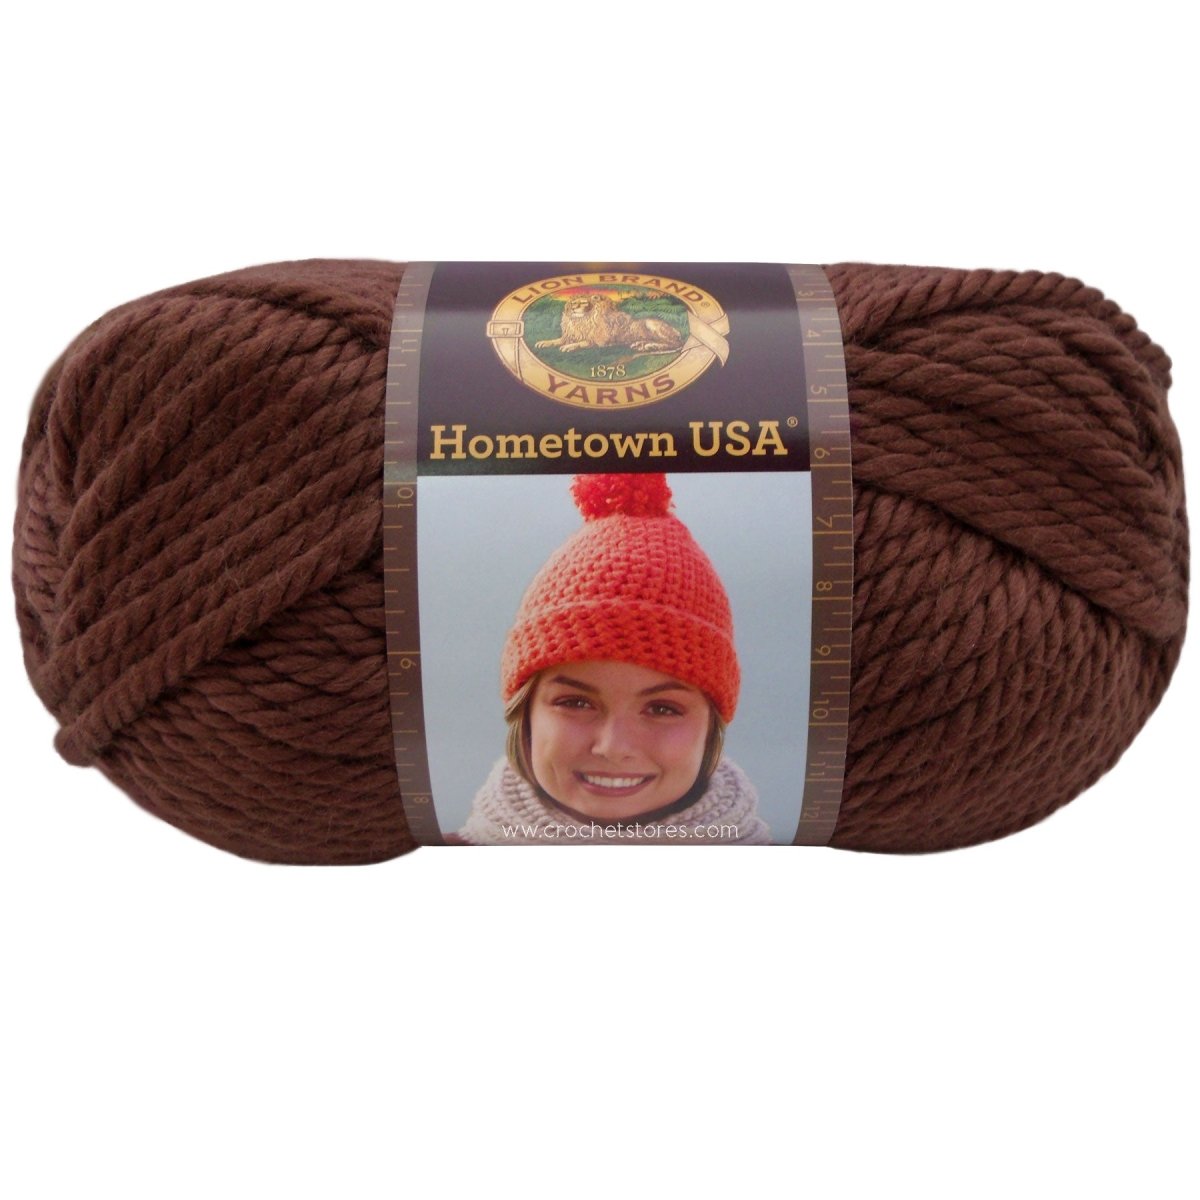 HOMETOWN - Crochetstores135-125023032001647